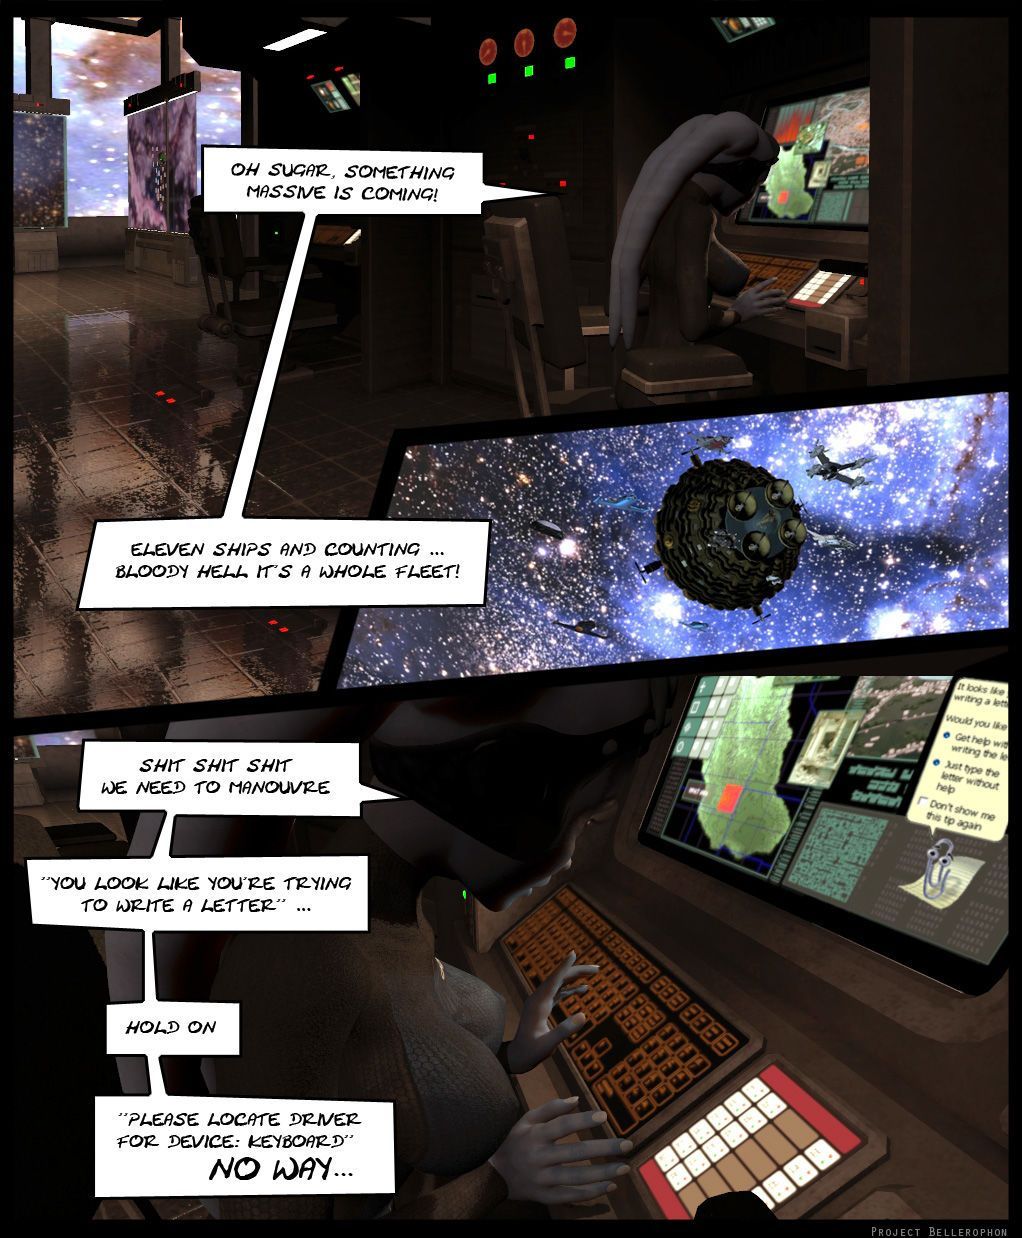 プロジェクト bellerophon コミック 17: スペース おっぱい Ding ドン 摩擦 a Dub 部分 4